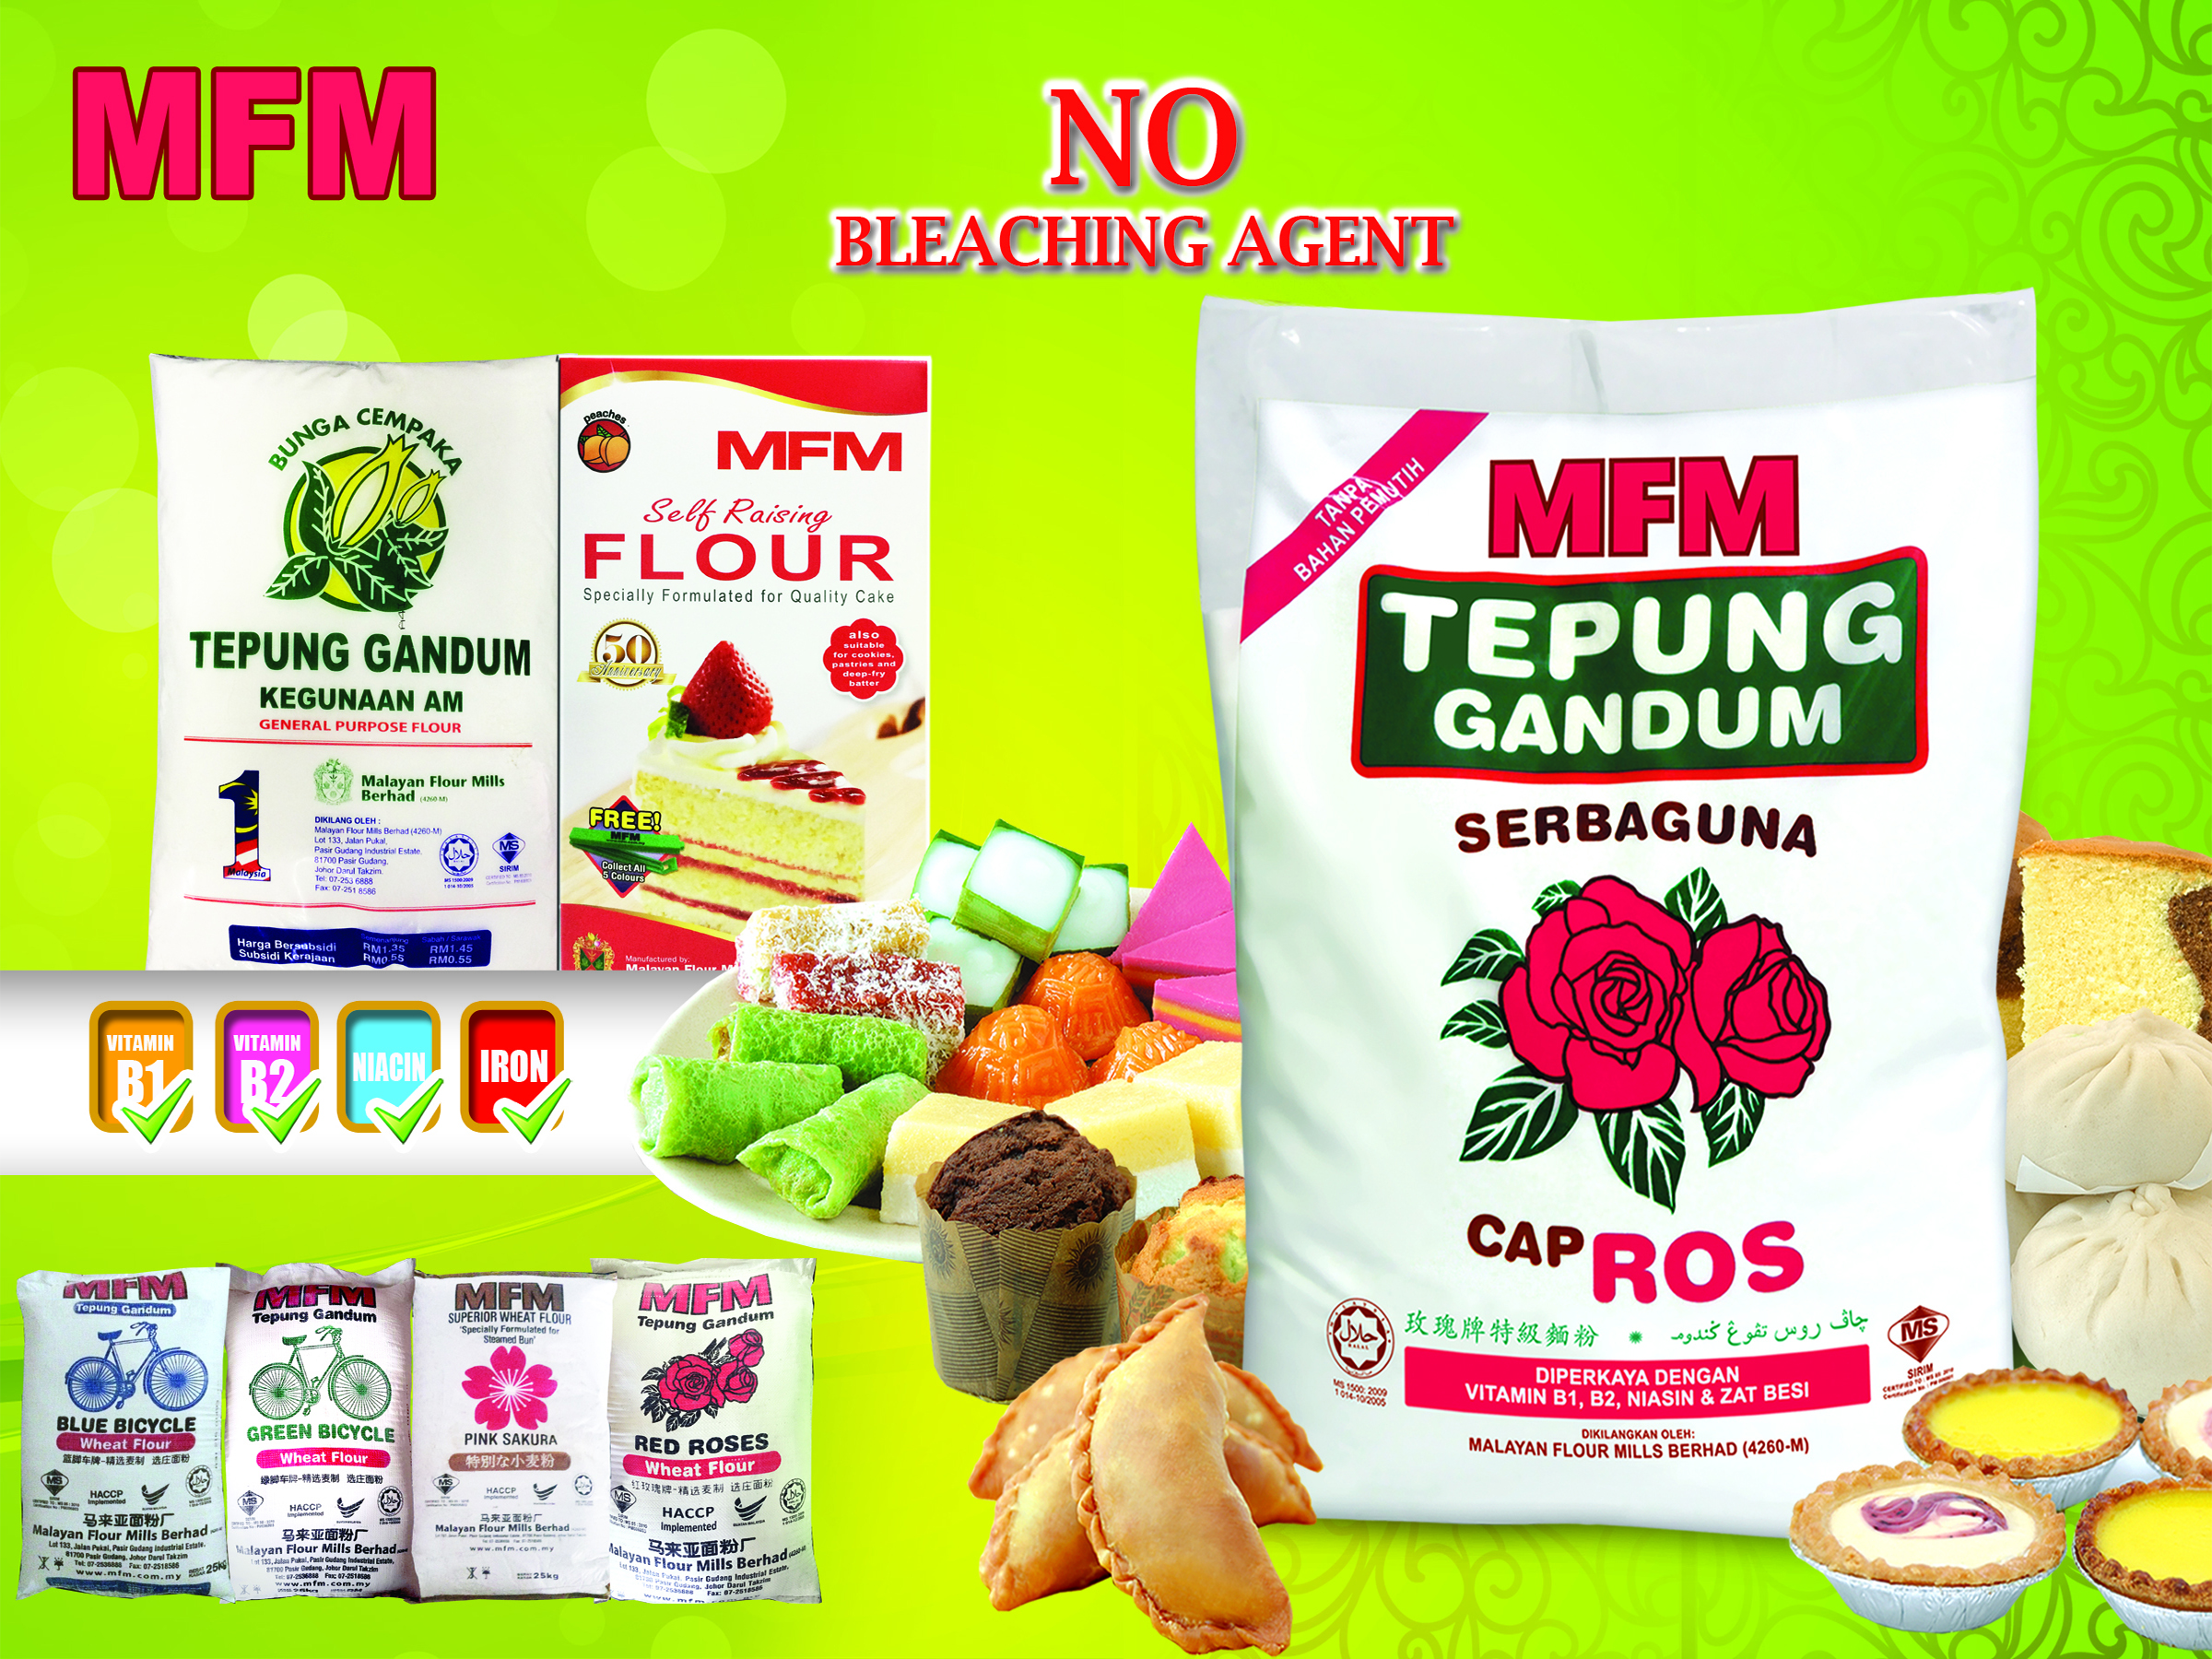 MFM Tepung Gandum Flour by Lian Hua Seng